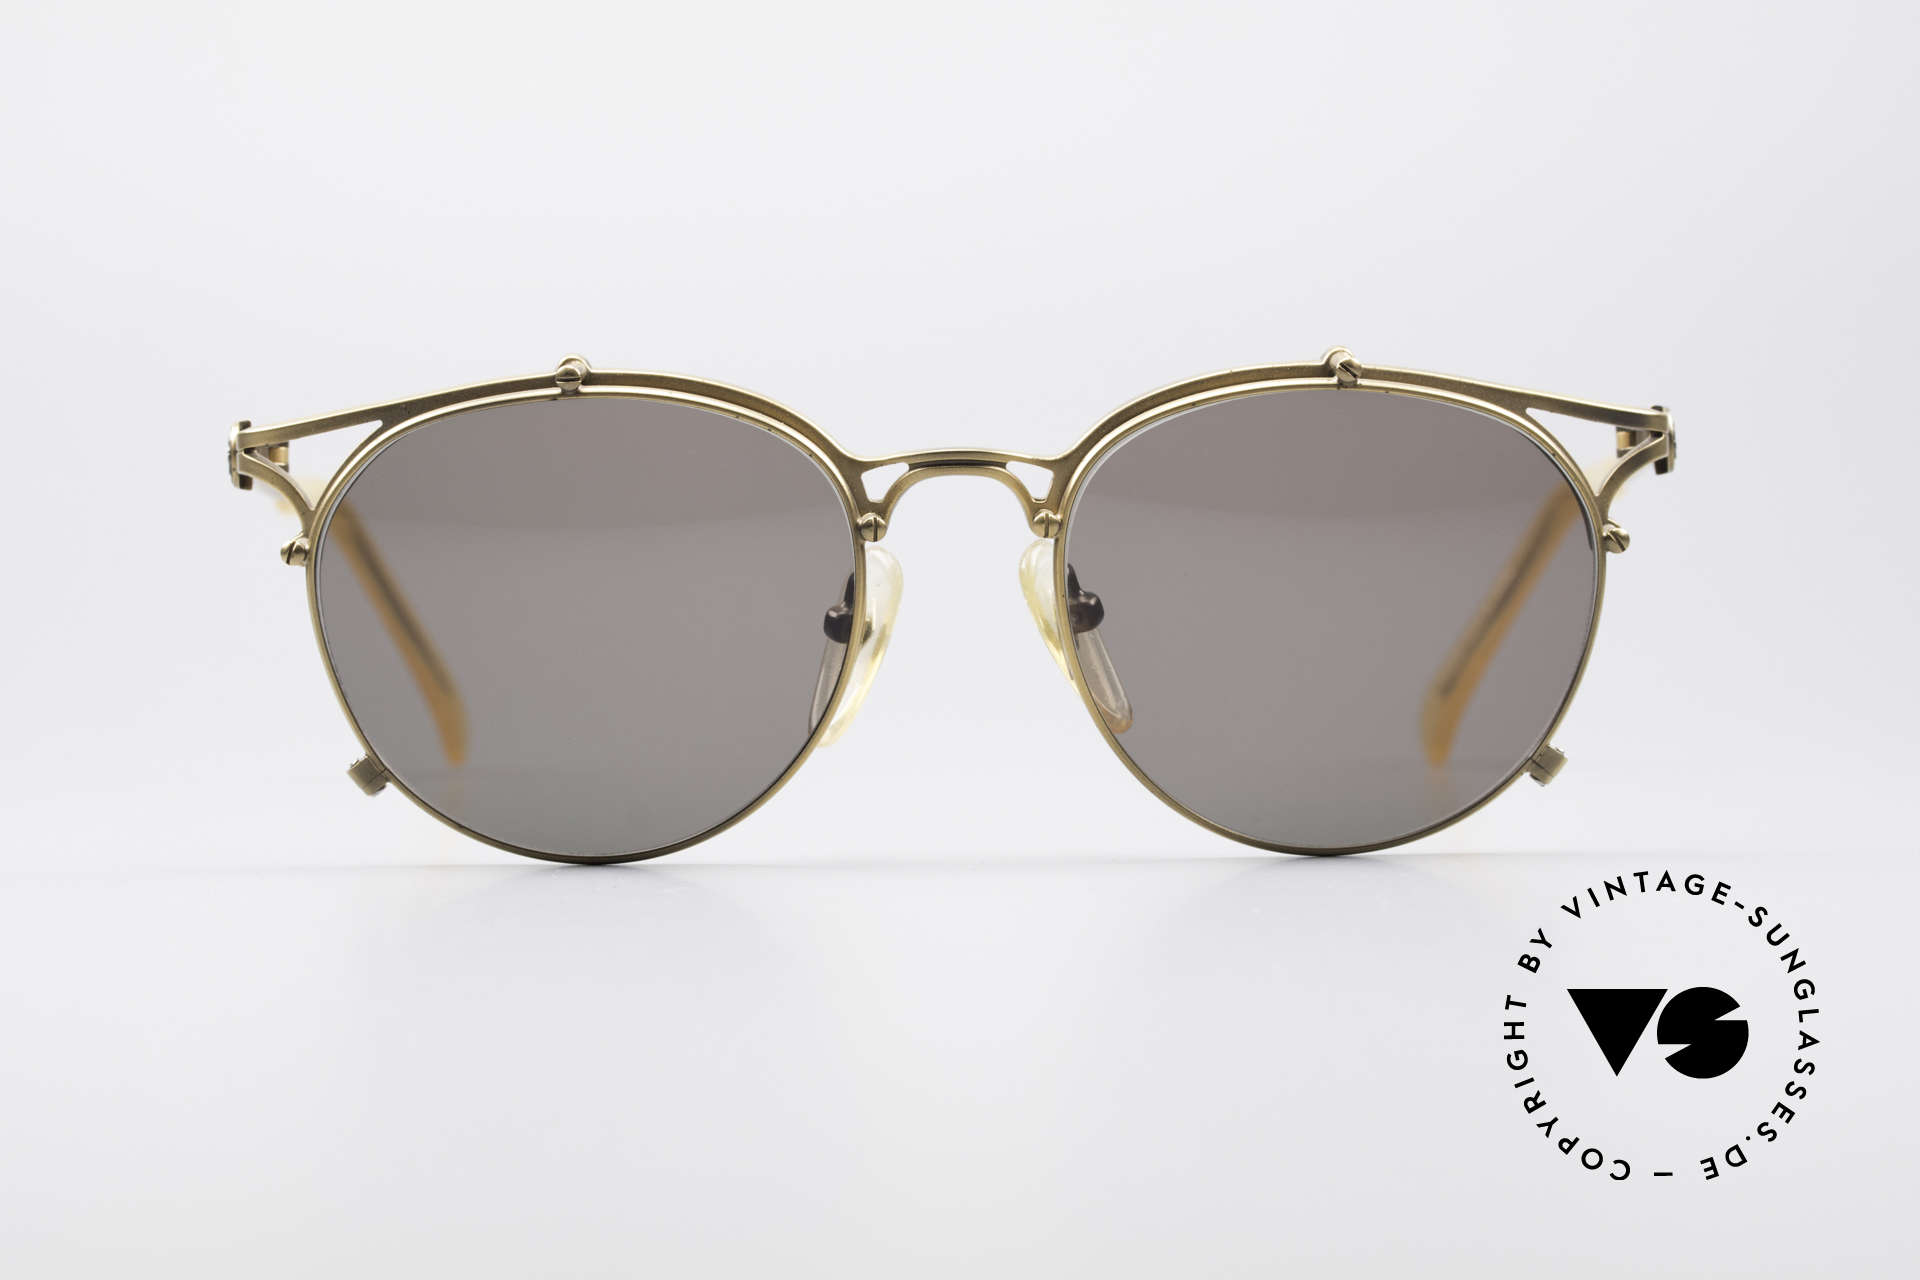 Sunglasses Jean Paul Gaultier 56-2171 Designer Panto Sunglasses